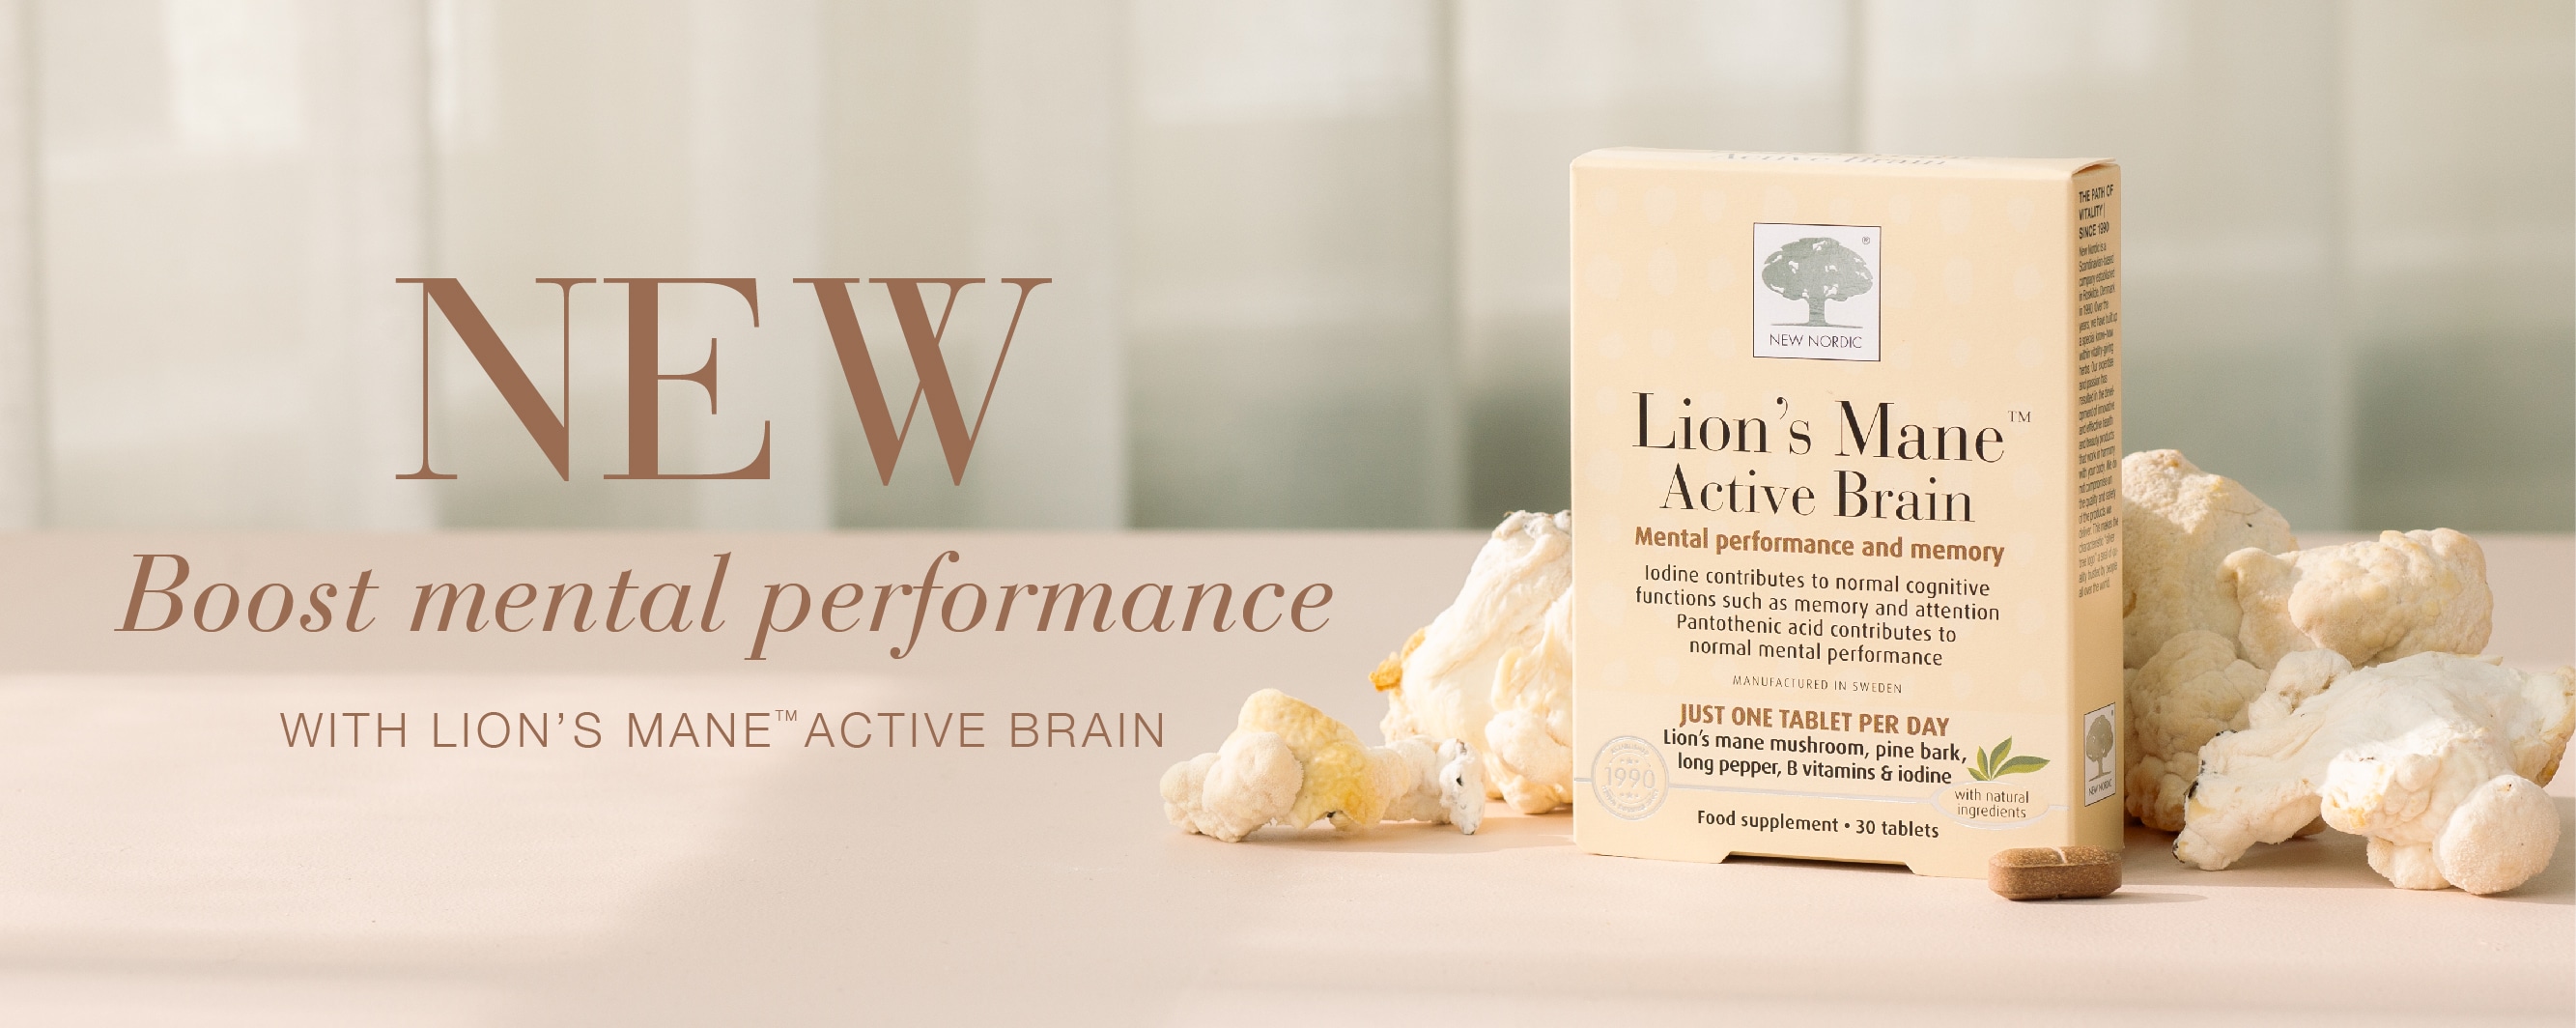 Lion's Mane™ Active Brain for better brain performance